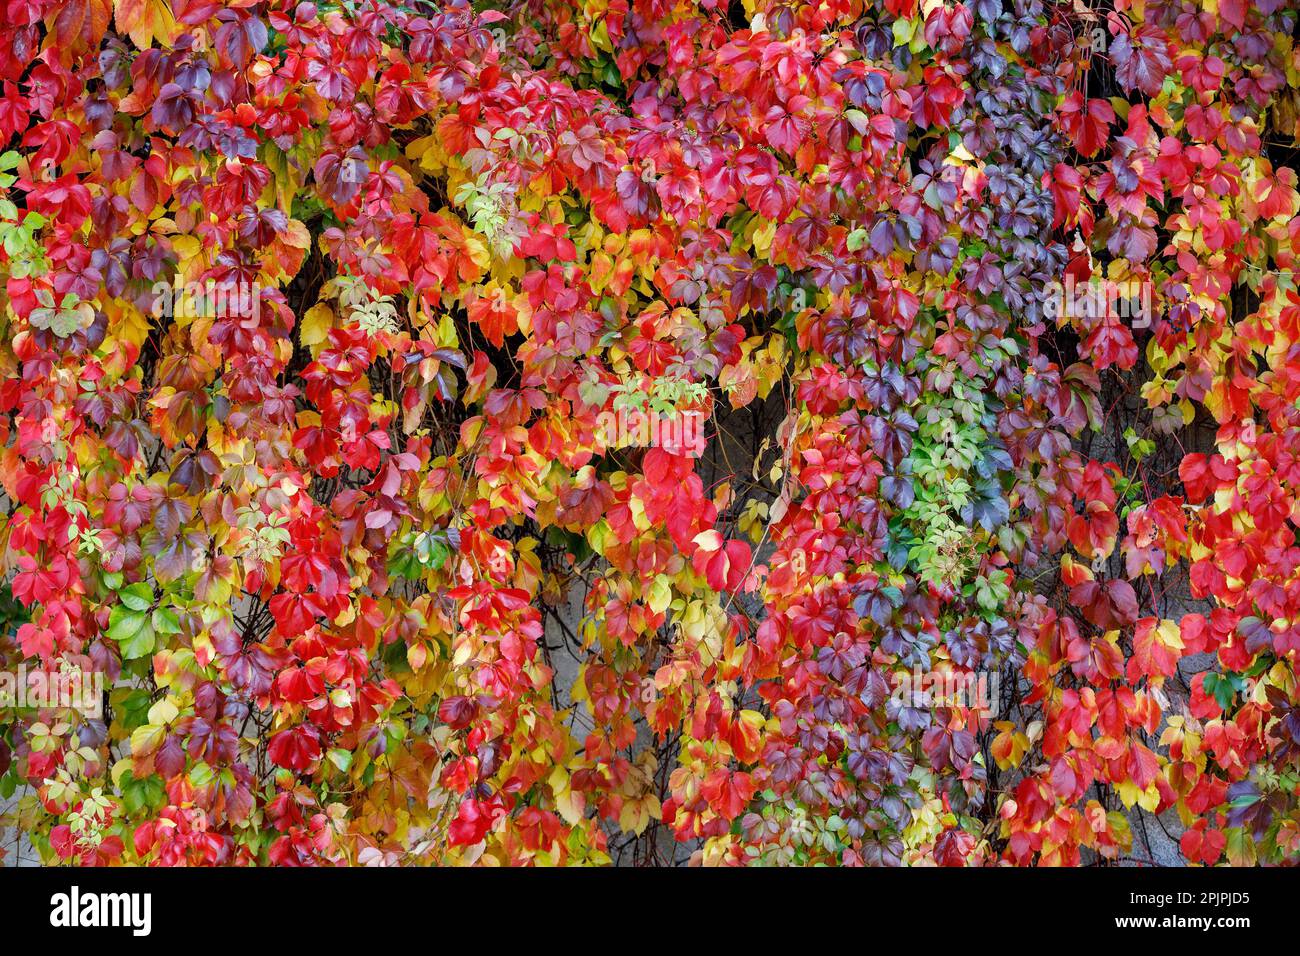 Wunderschöne gezackte rote Blätter von Parthenocissus quinquefolia an sonnigen Tagen. Hintergrund Herbst. Hintergrund, Textur der bunten Herbstblätter von Pa Stockfoto